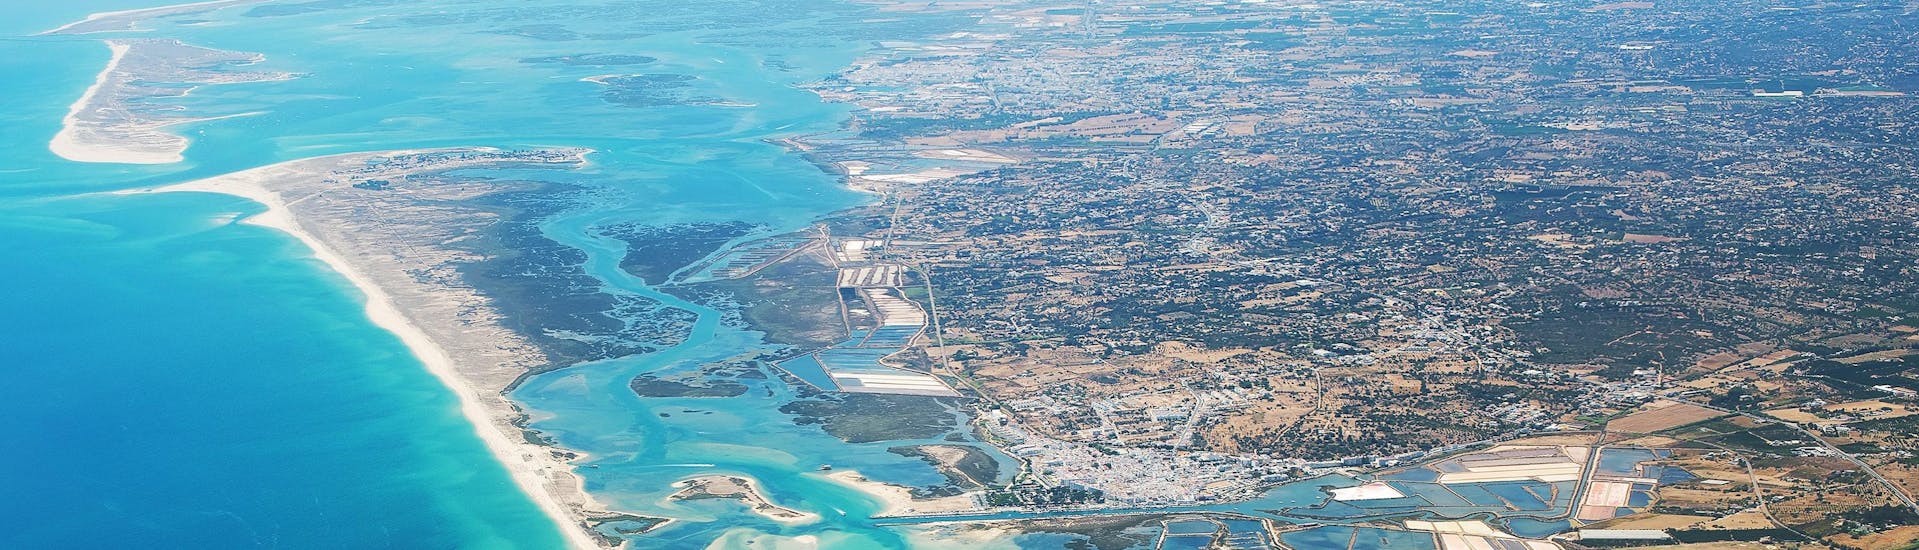 Paracaidistas disfrutando de su salto en paracaídas mientras sobrevuelan Algarve, uno de los sitios más populares para tirarse en paracaídas. 